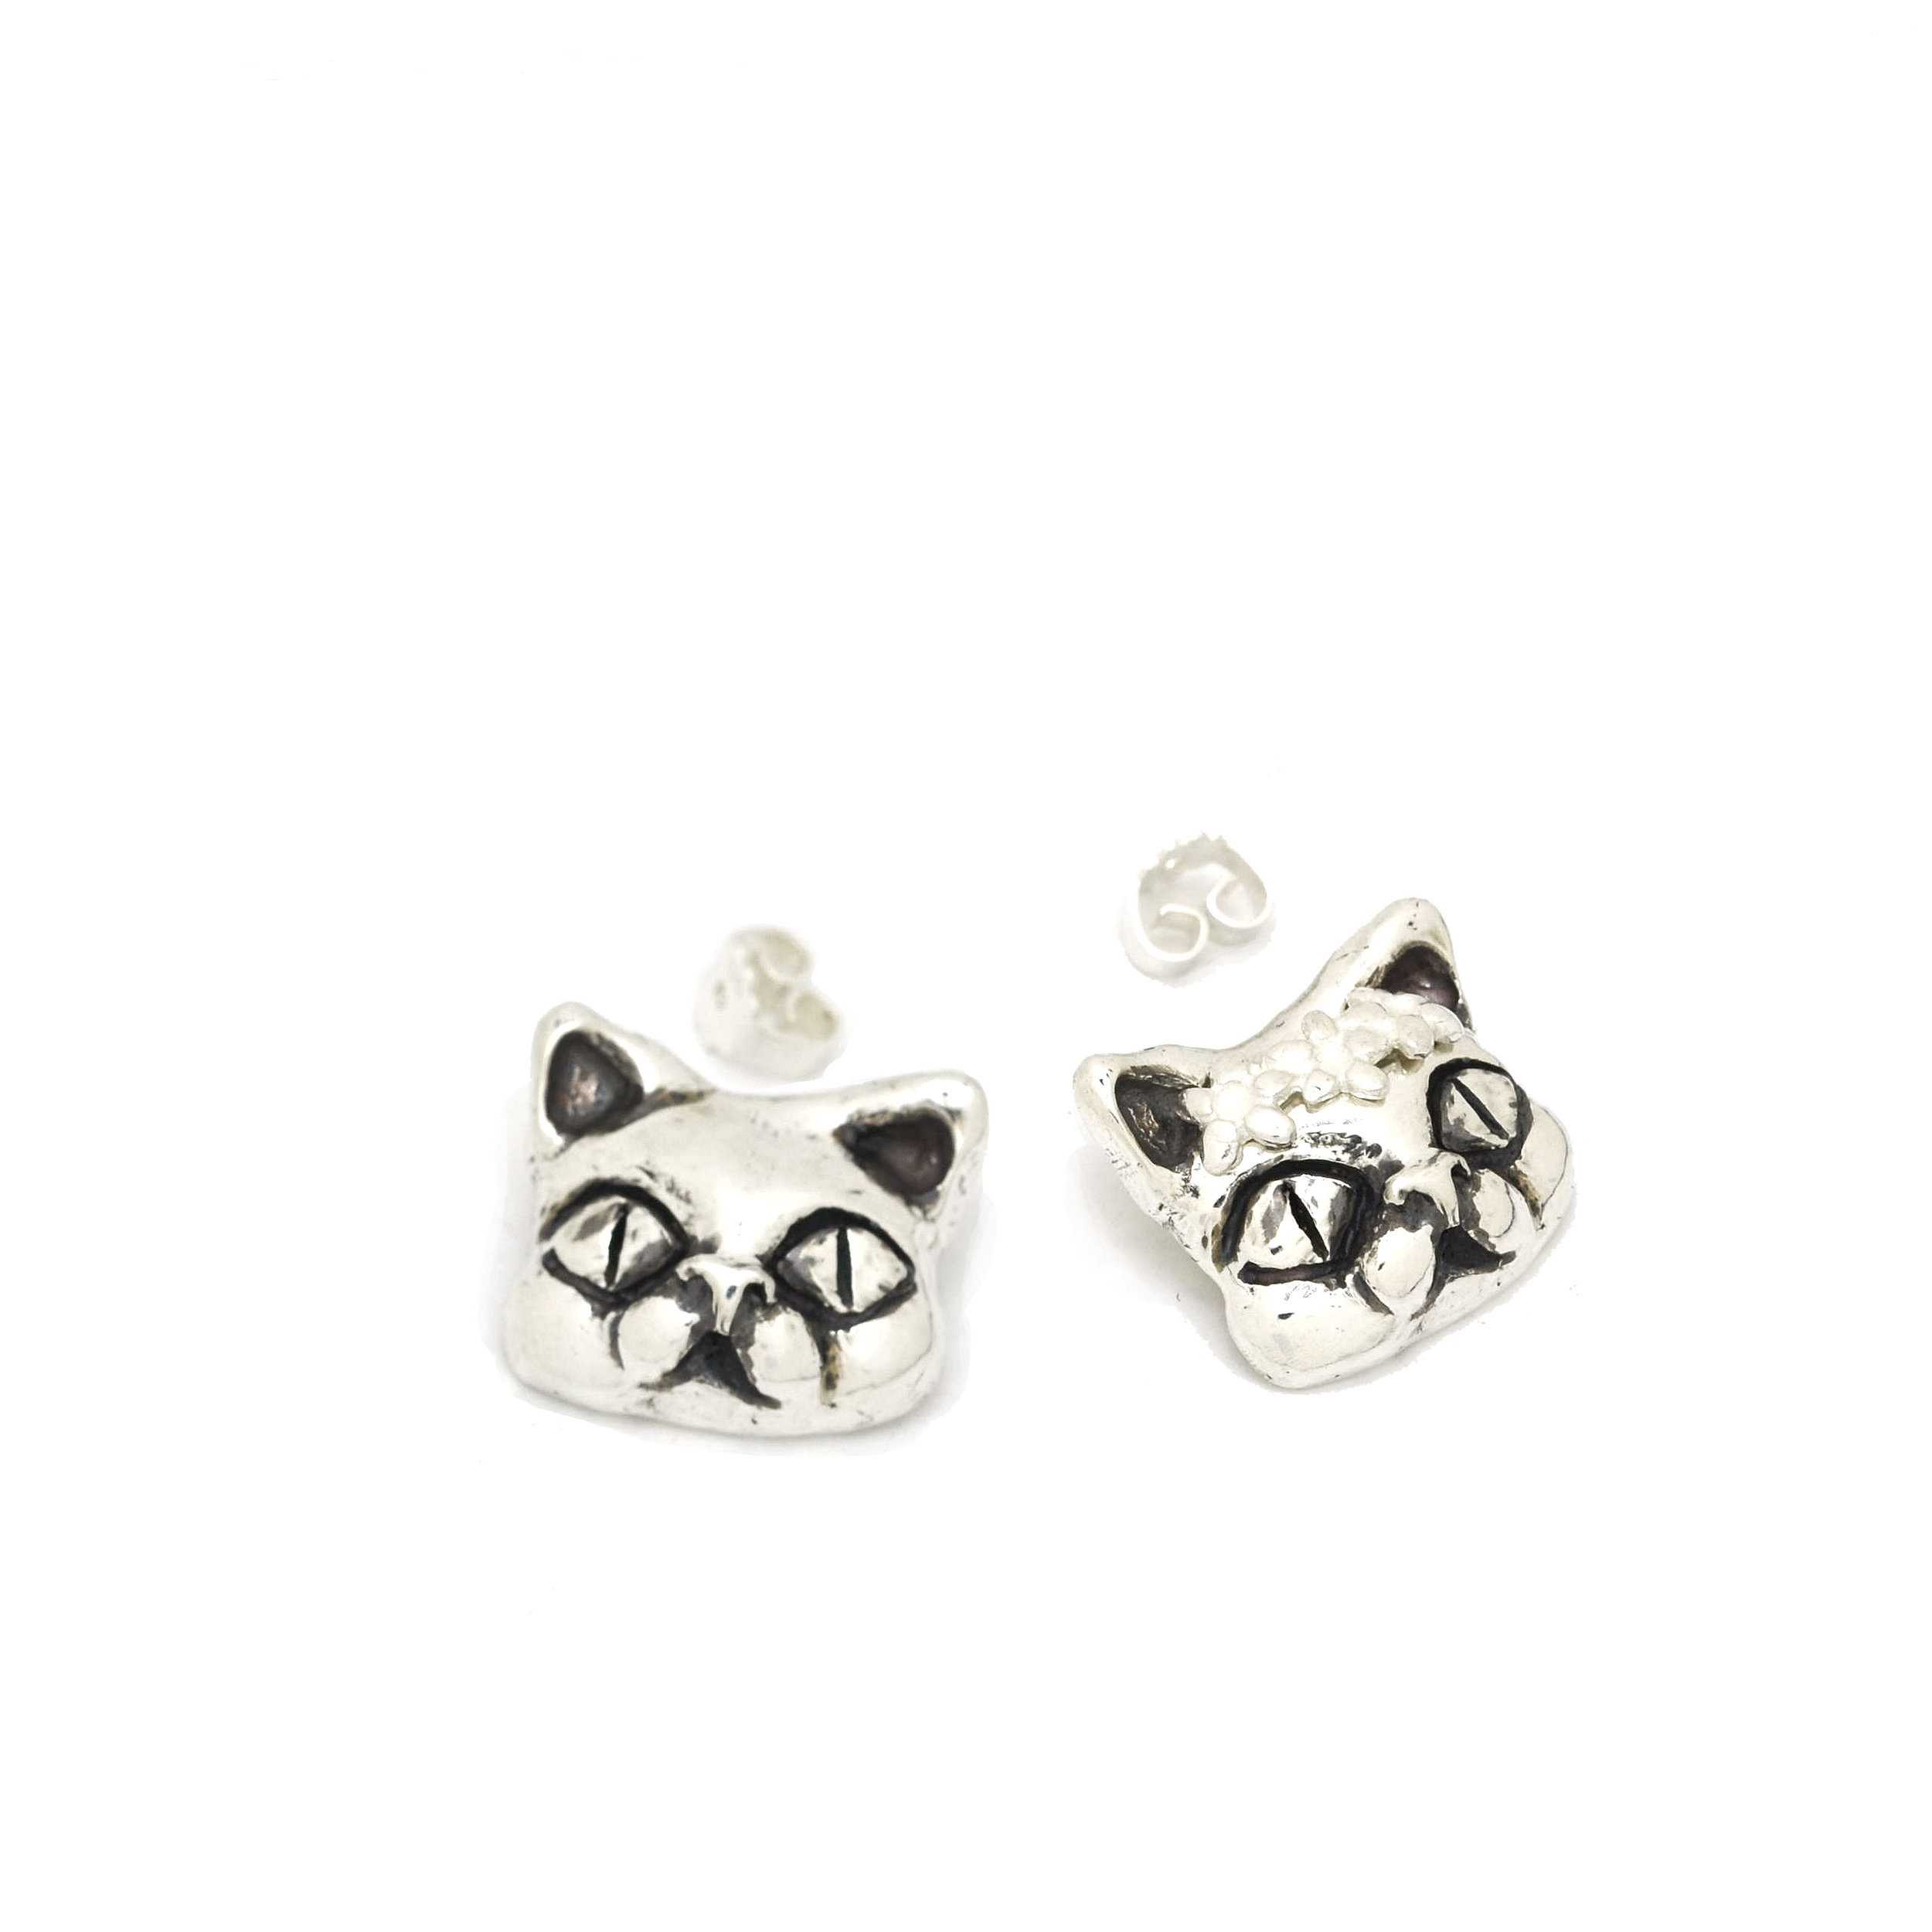 Cat jewellery Art Nouveau Cat Earrings Celtic Cat Silver Earrings Wedding Gift Cat Gift Silver cat earrings Kittens Cats Handmade